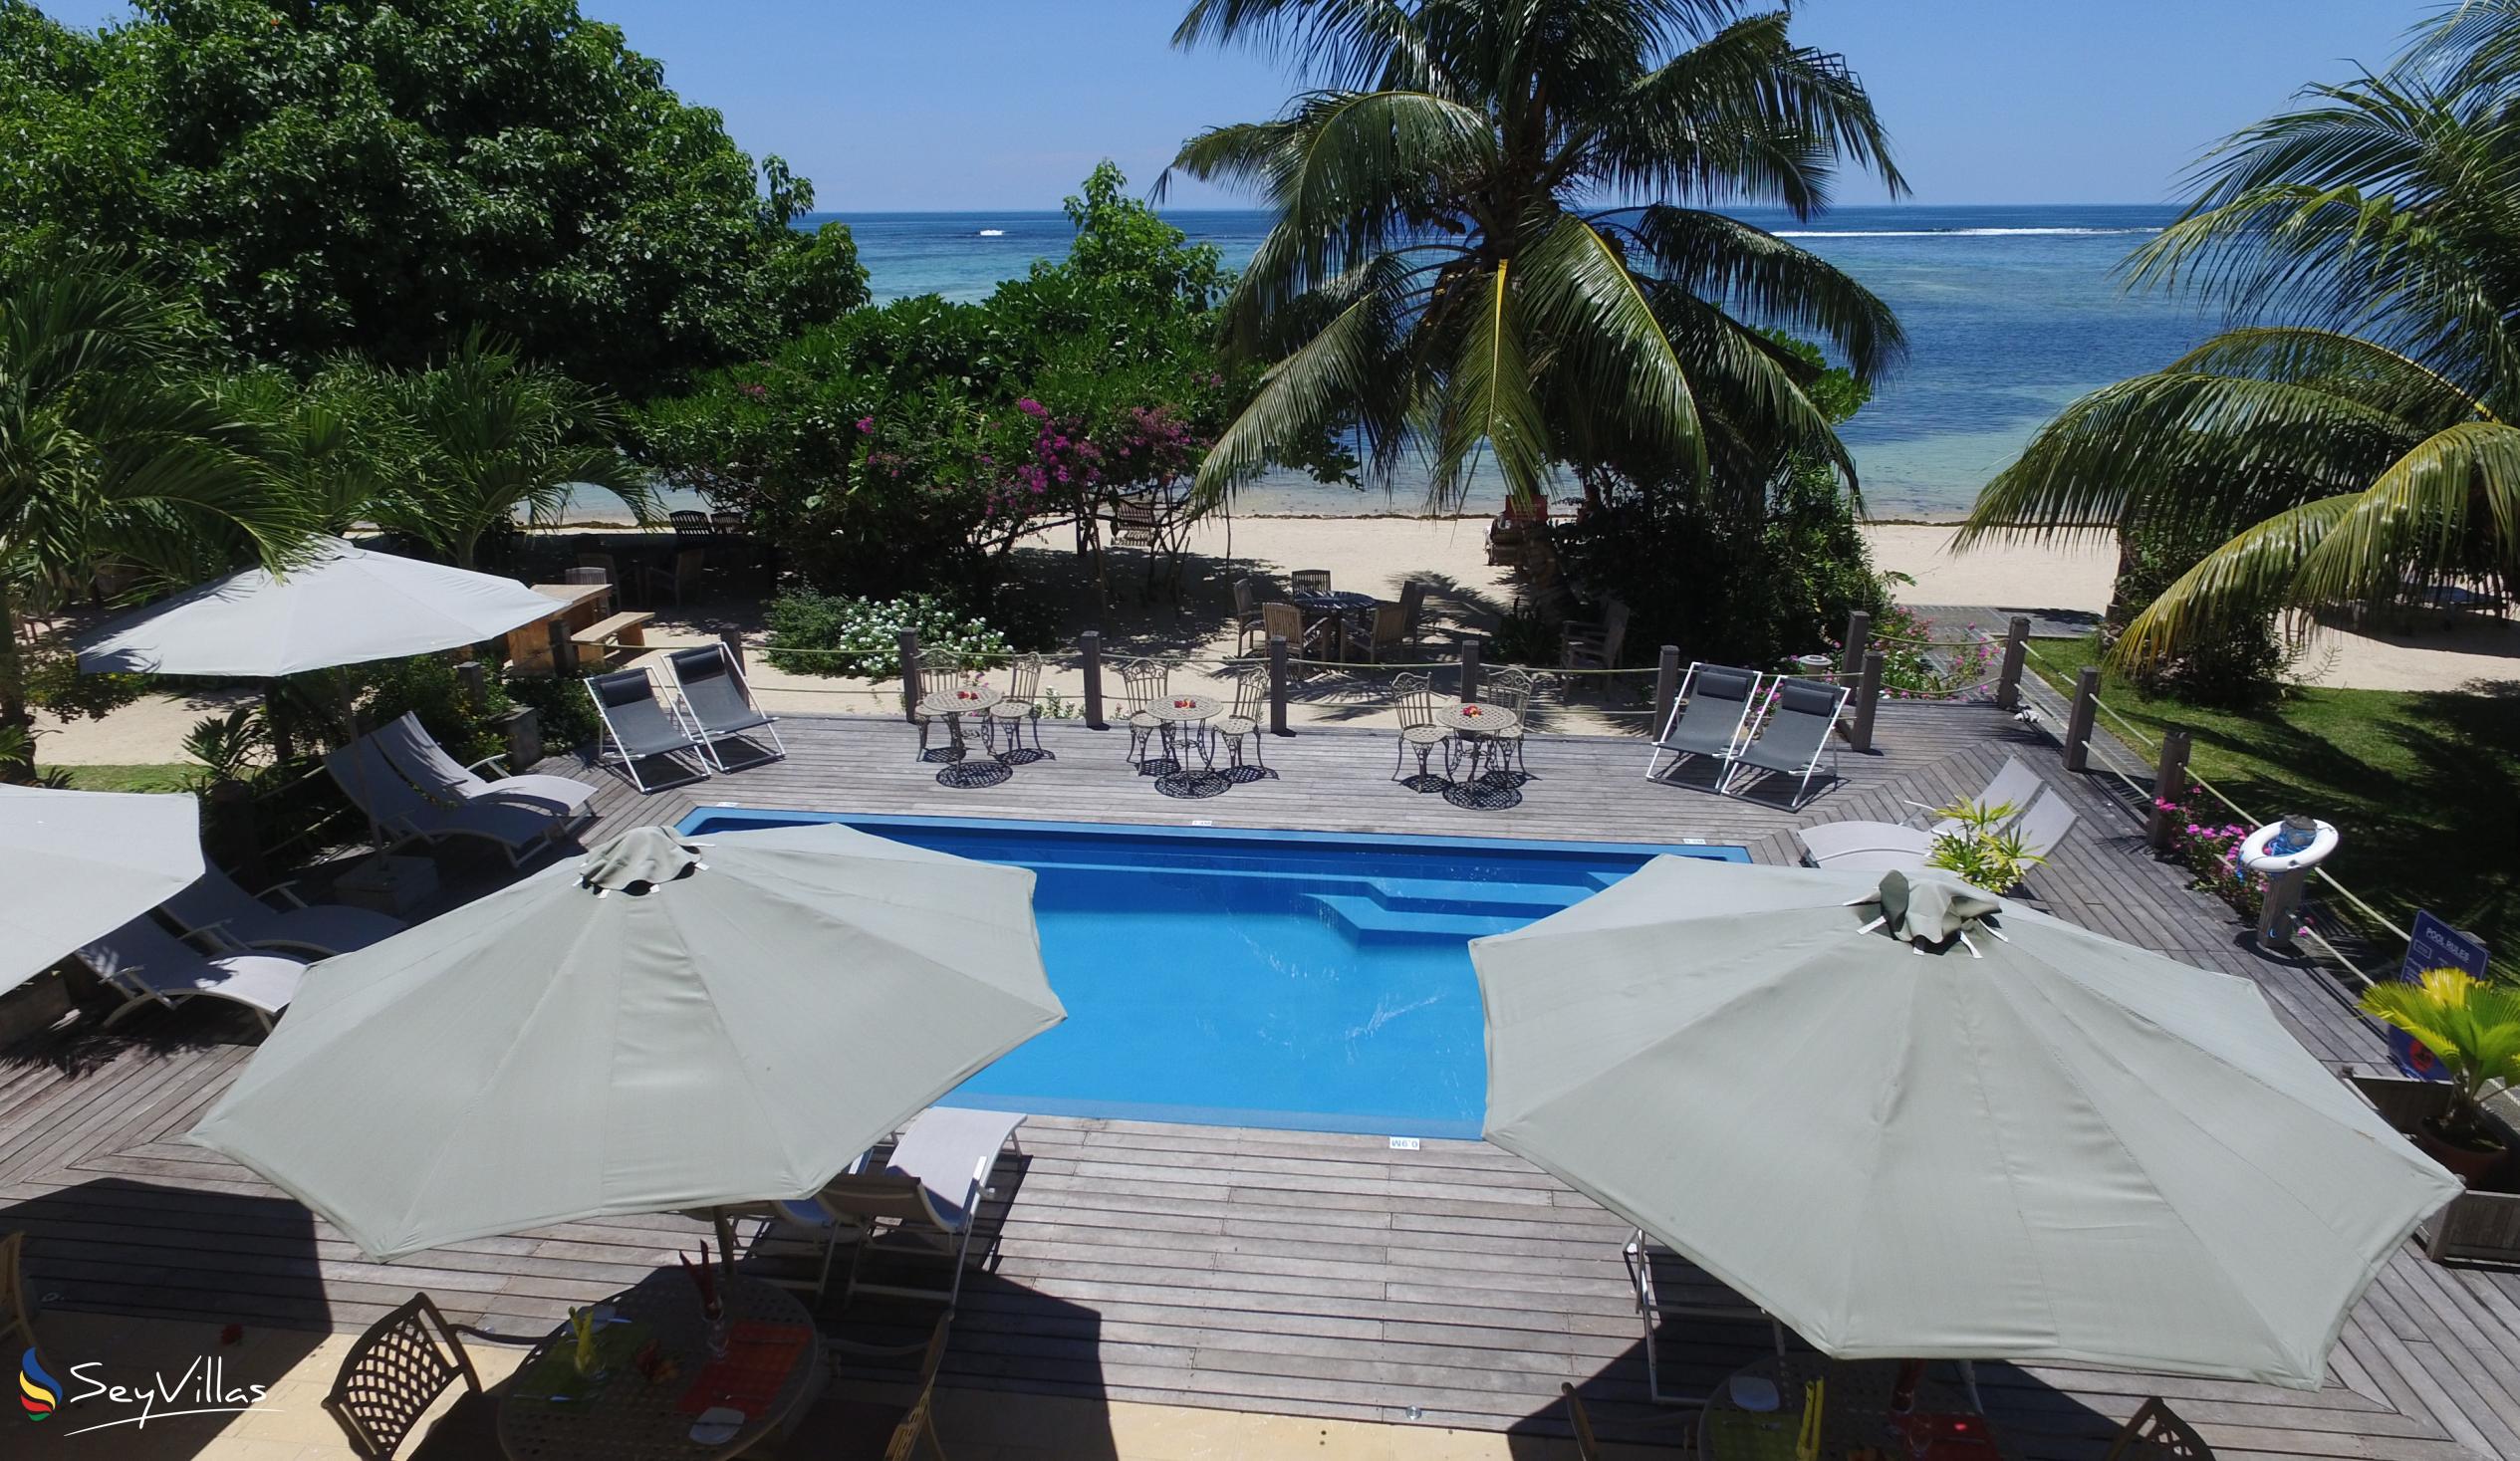 Photo 7: Crown Beach Hotel - Outdoor area - Mahé (Seychelles)